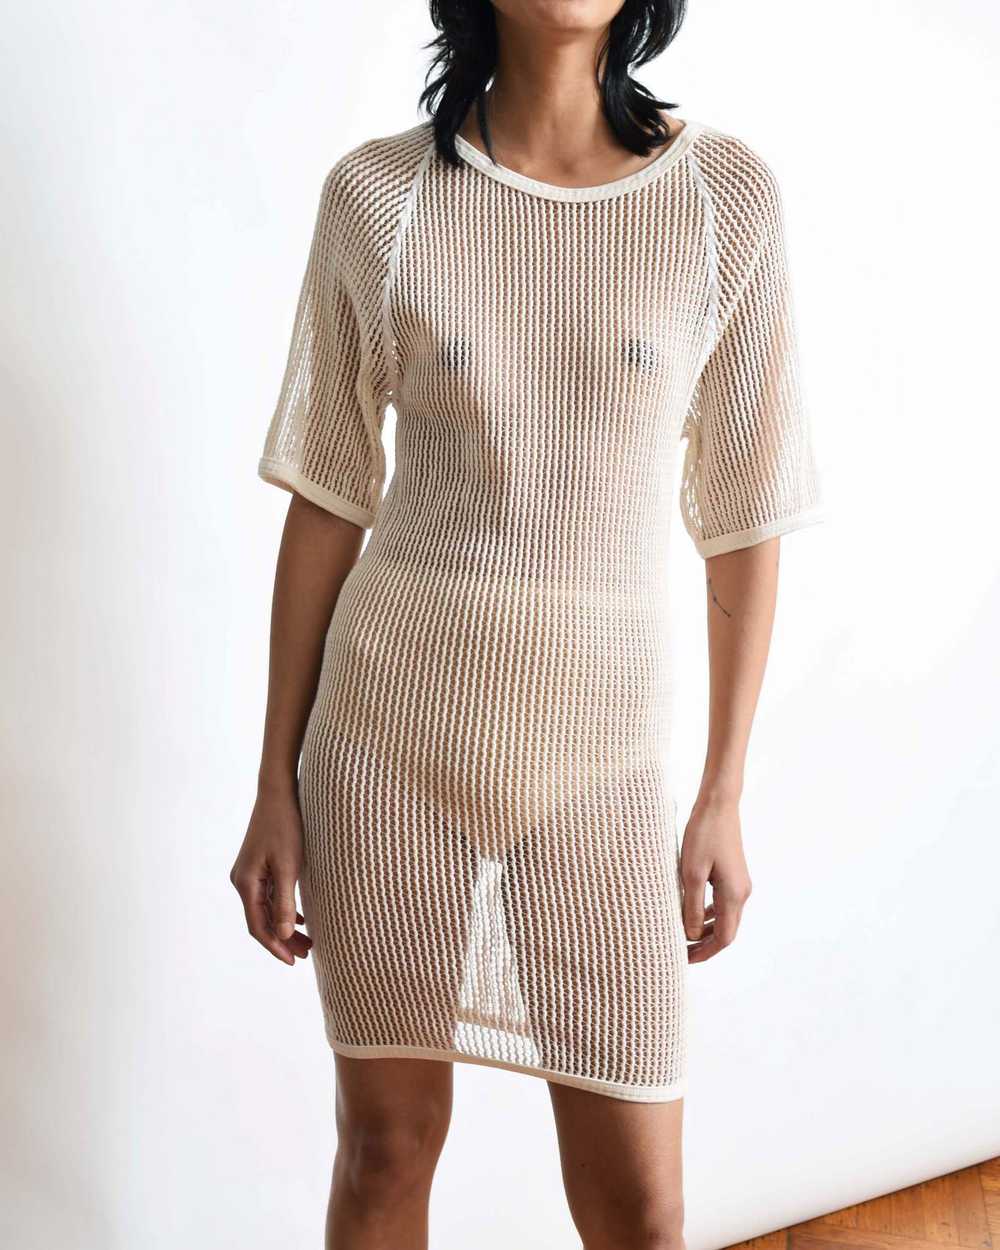 Vintage Cotton Net Dress - image 8